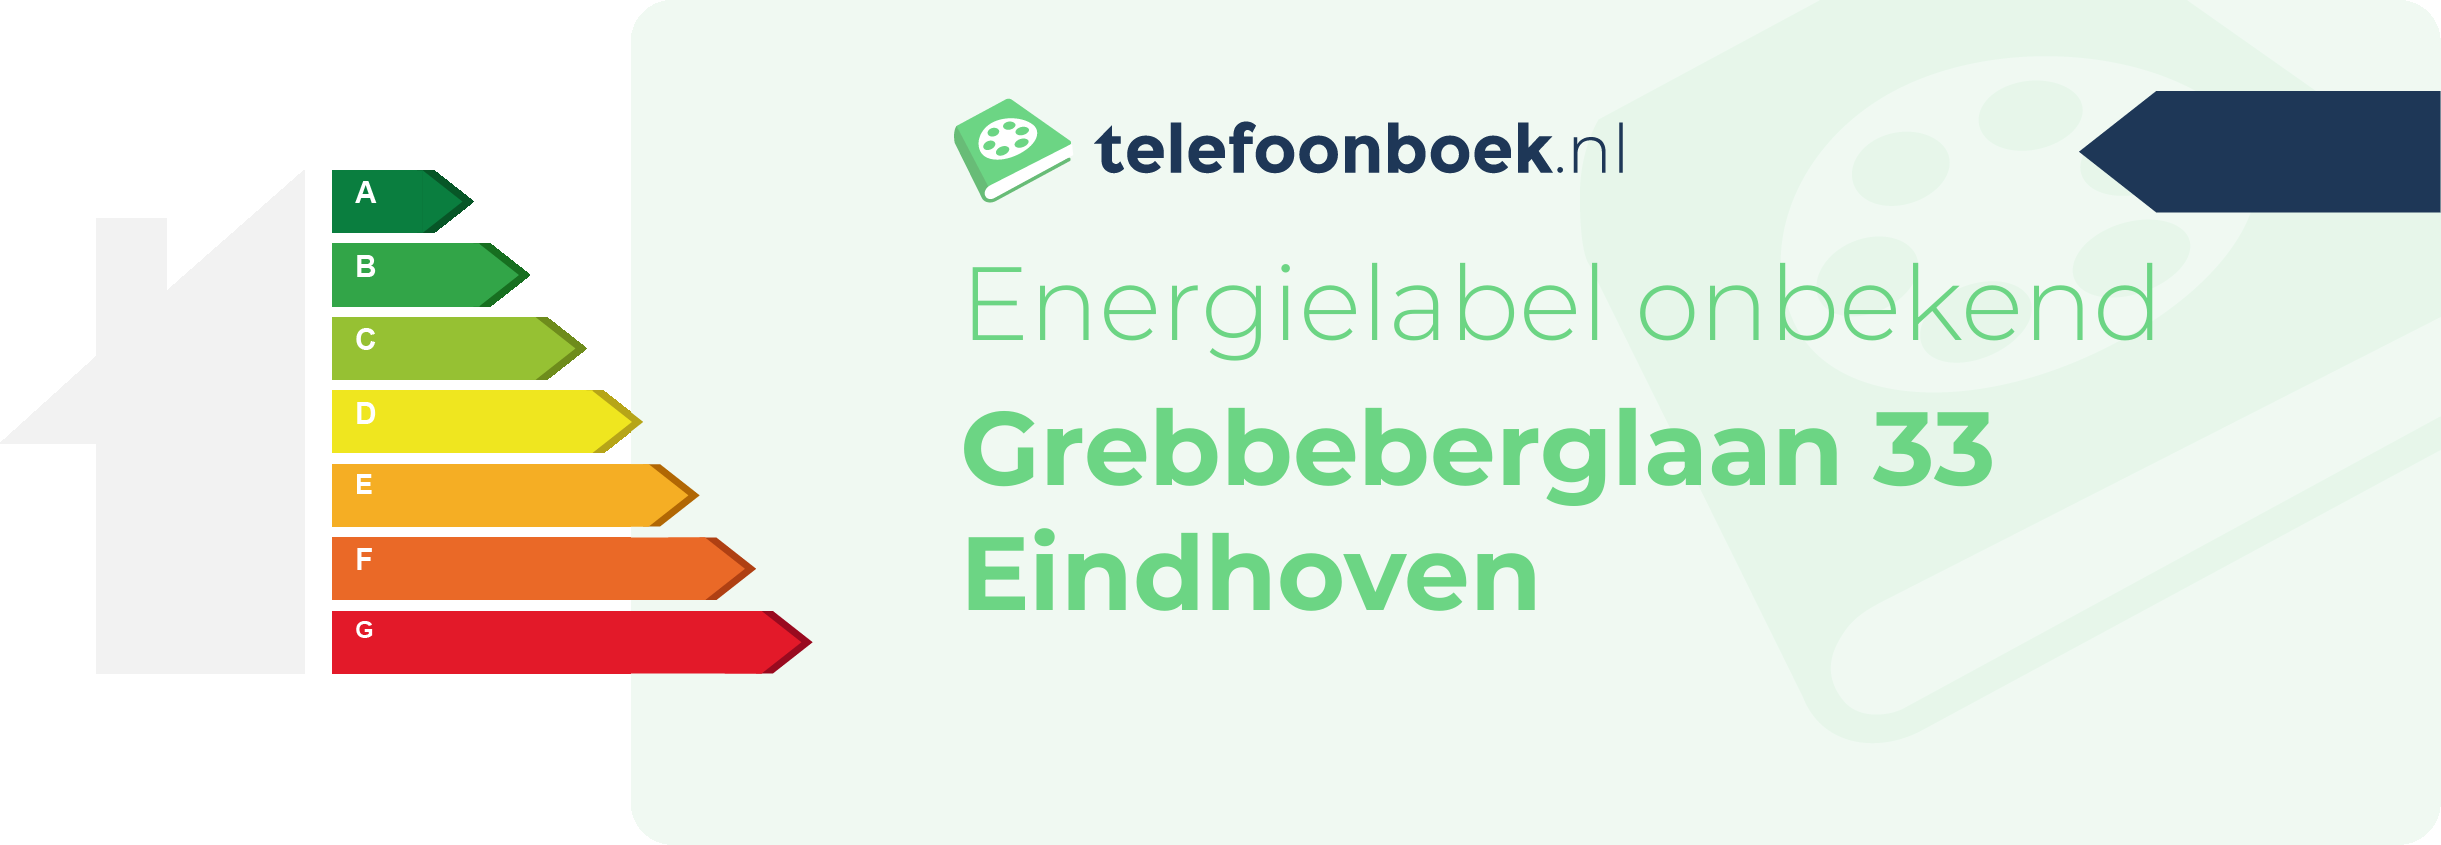 Energielabel Grebbeberglaan 33 Eindhoven